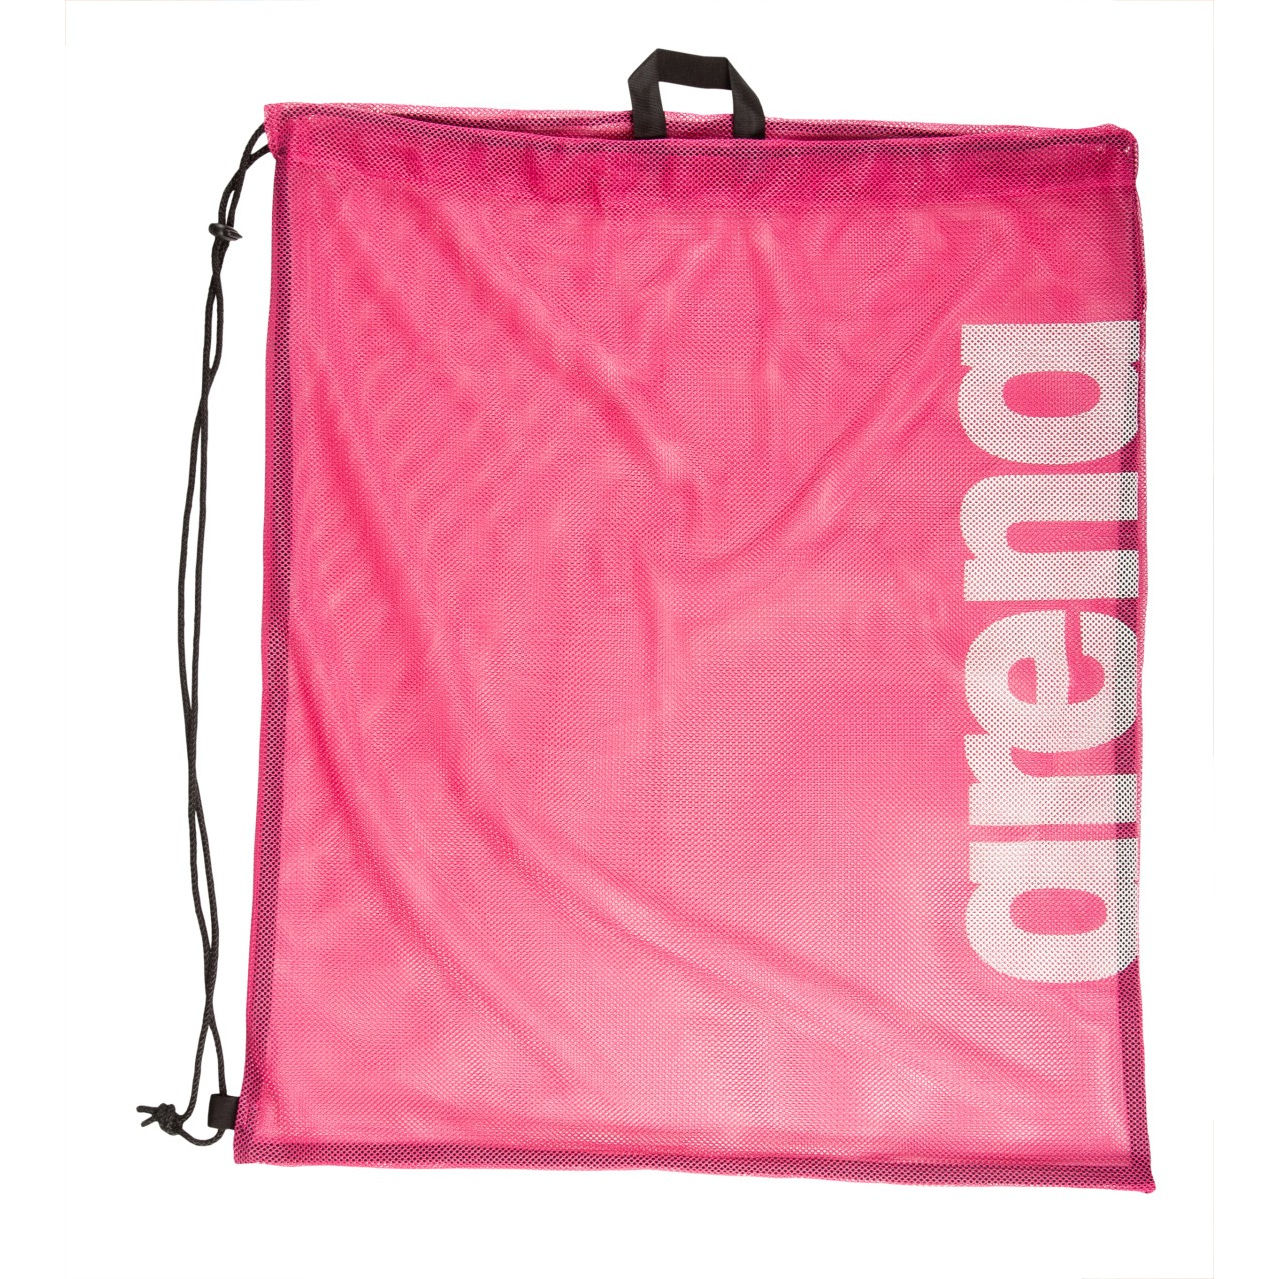 Produktbild von arena Team Mesh Turnbeutel - Pink